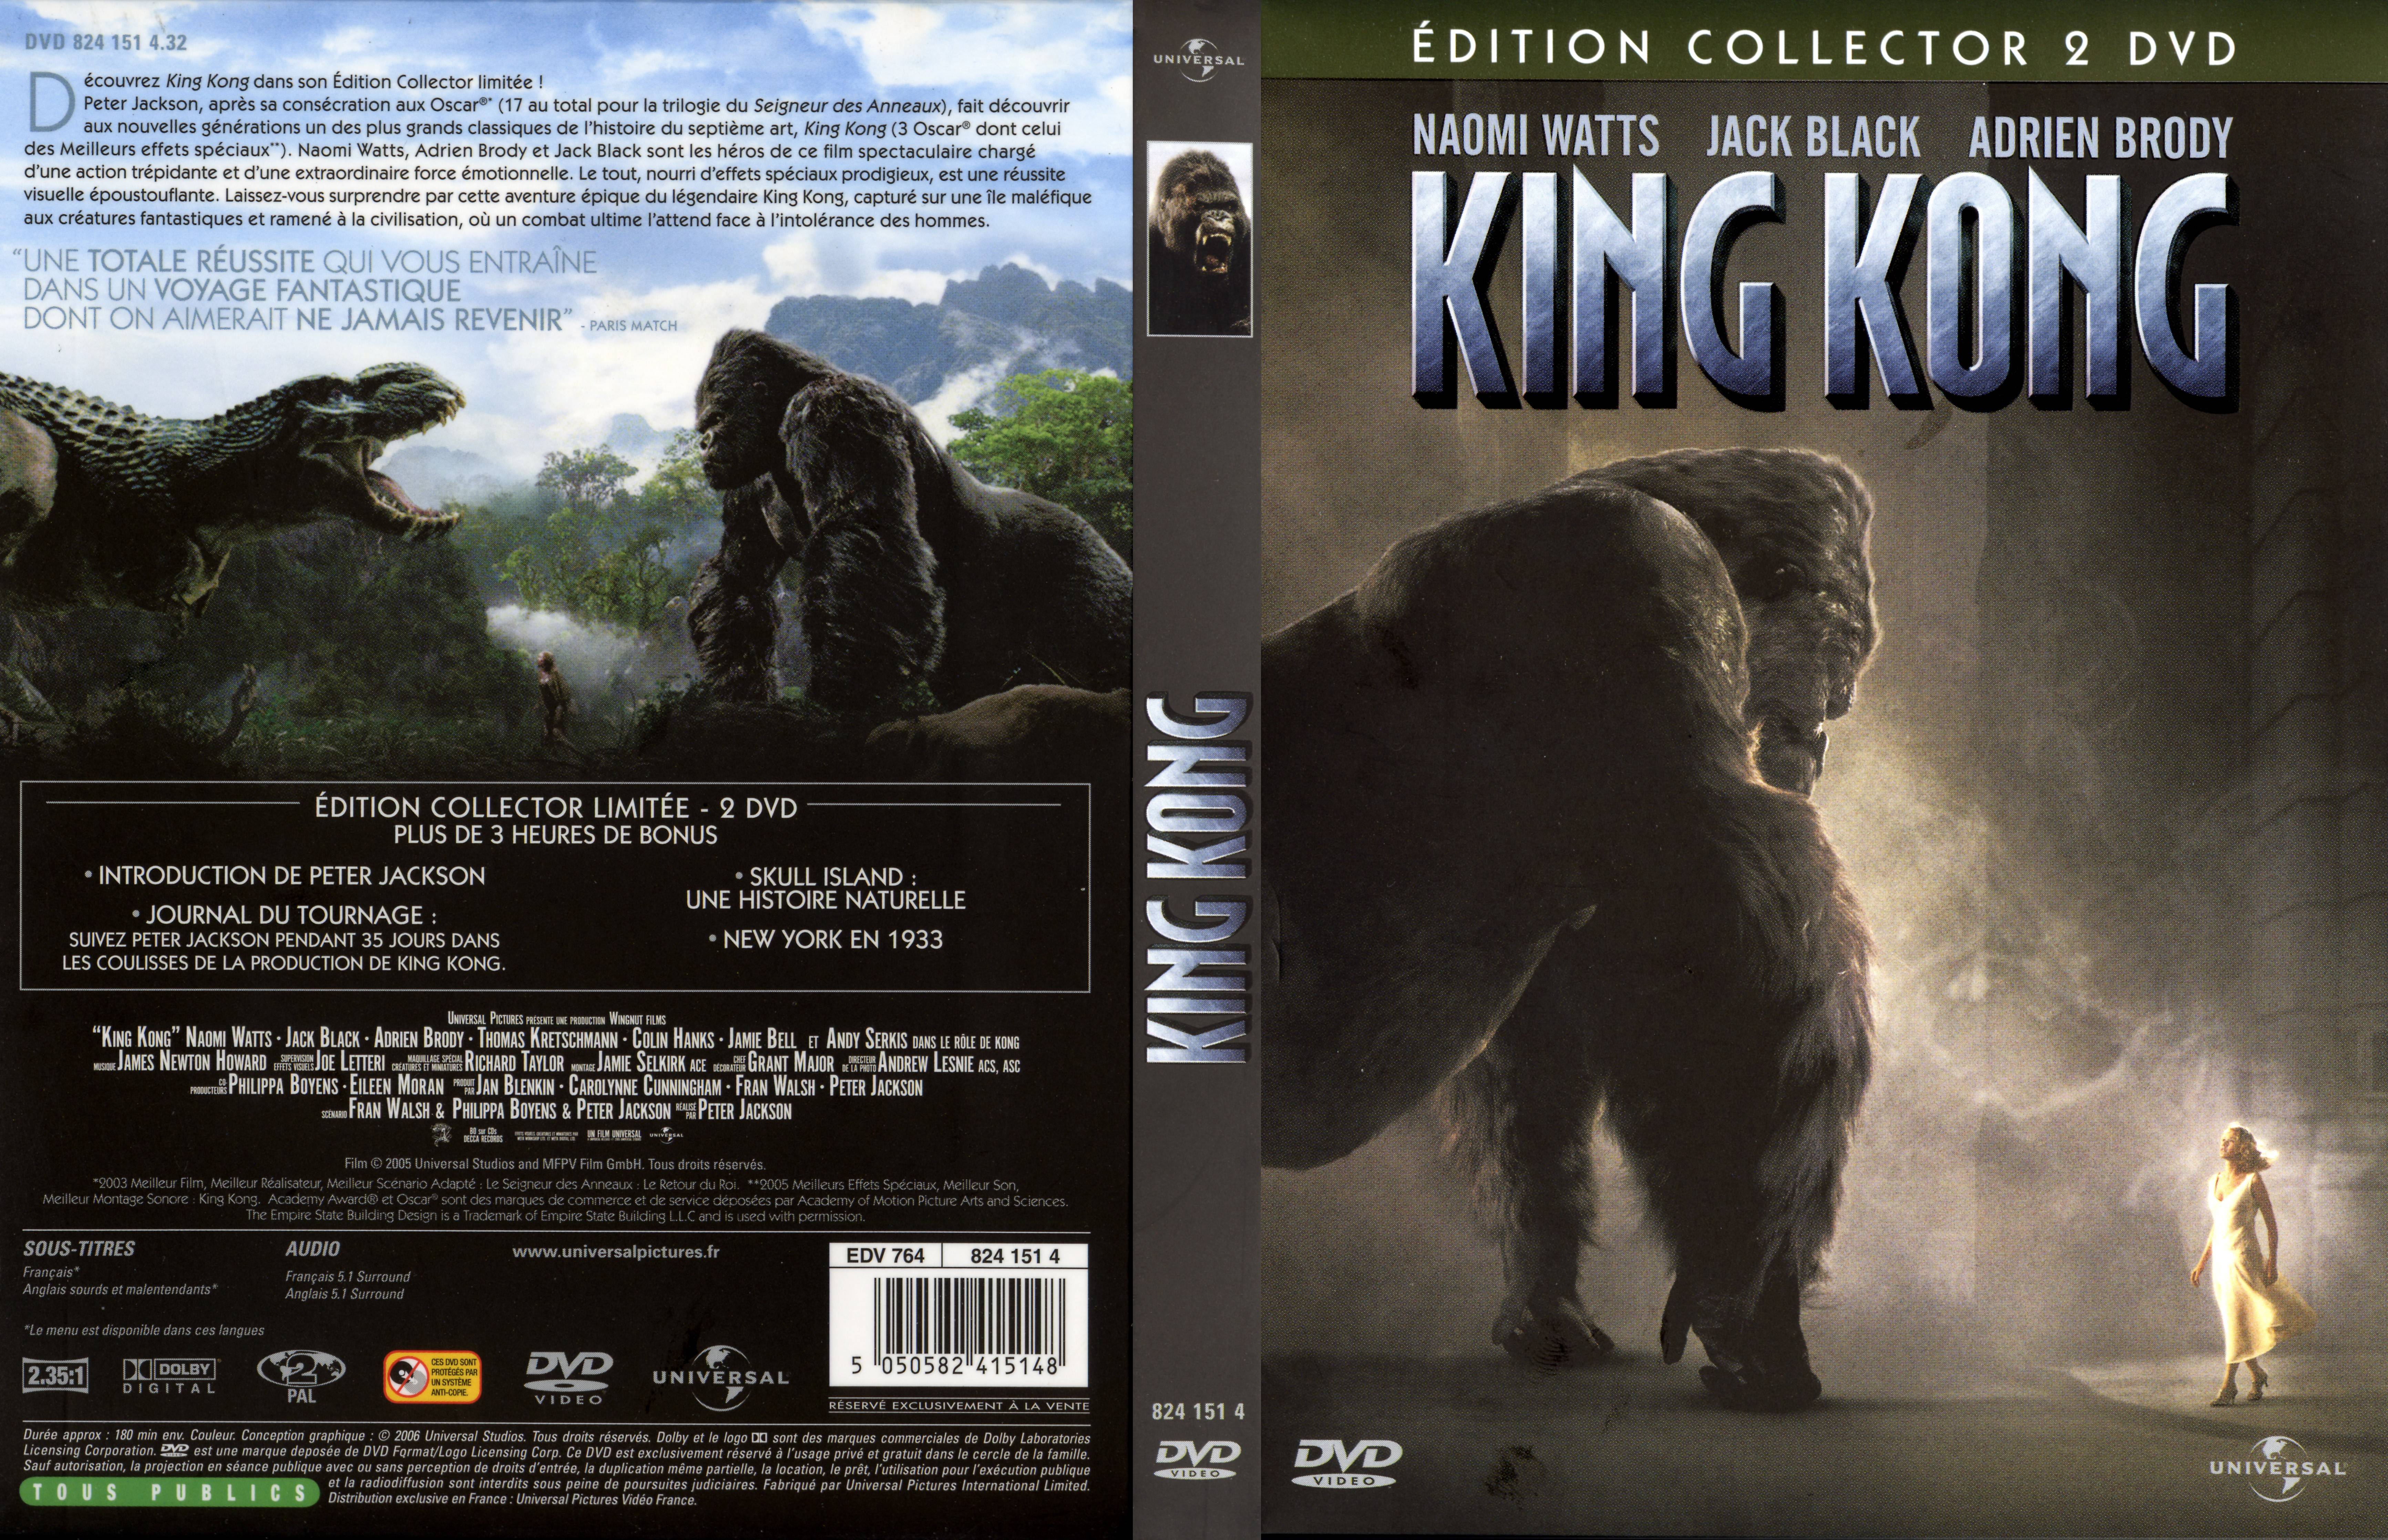 Jaquette DVD King Kong 2005 v2